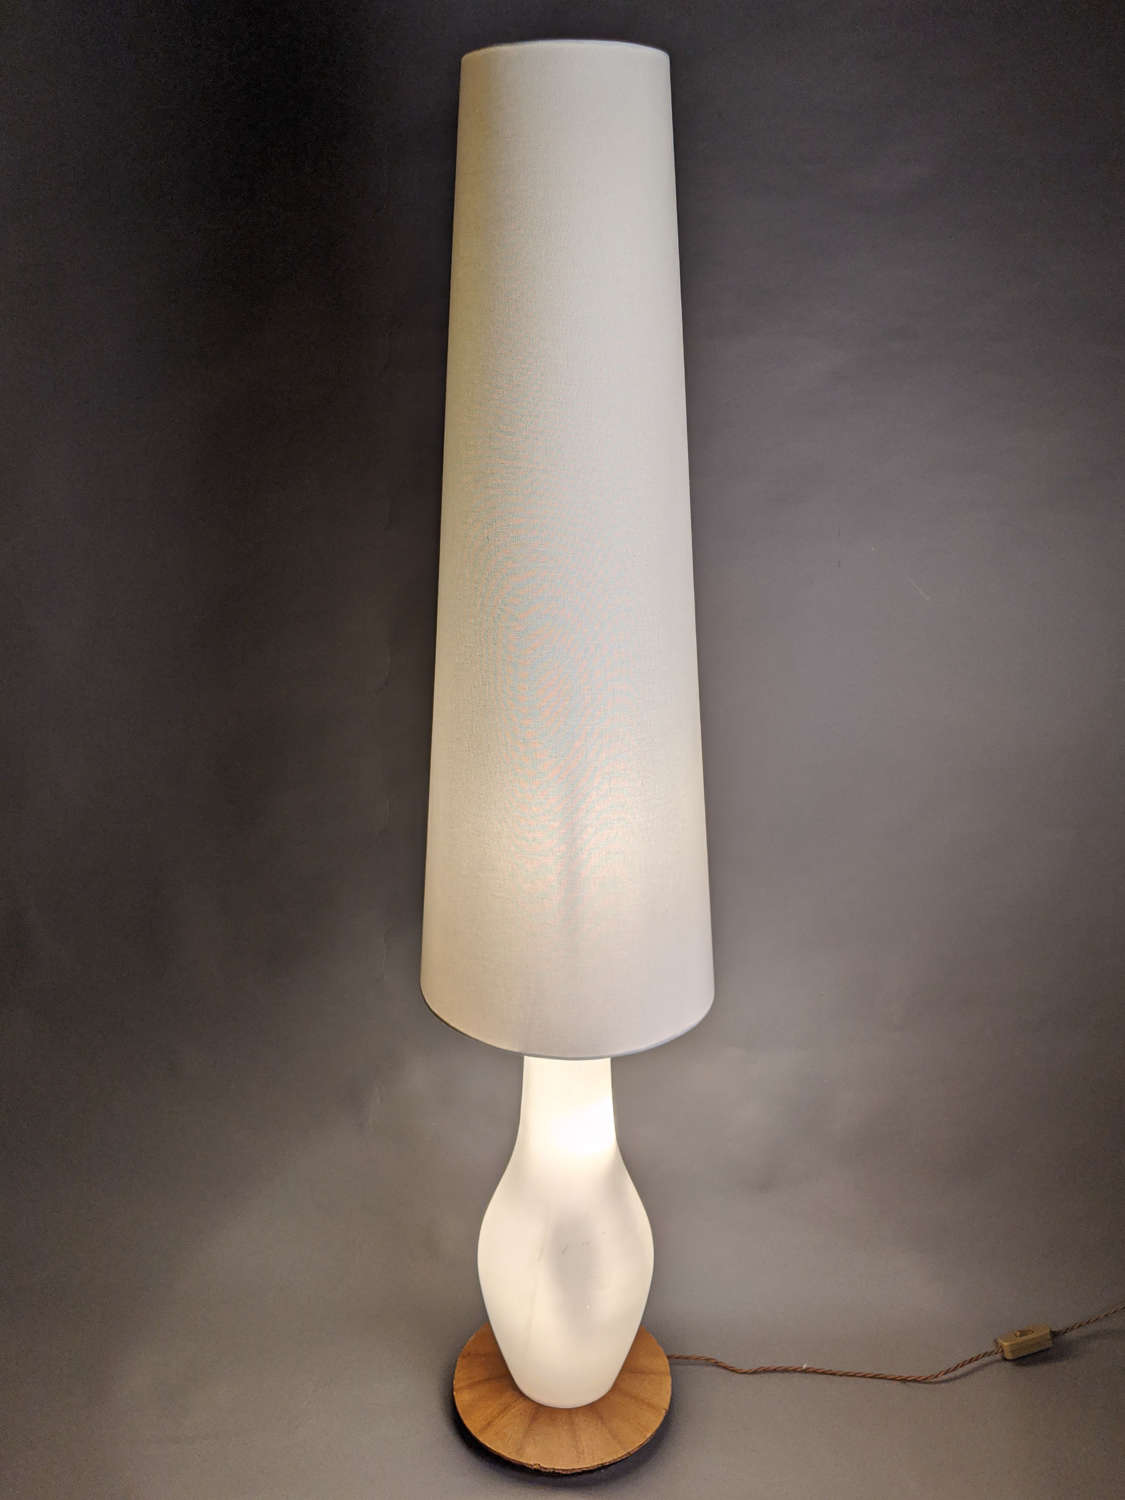 A Belgium Mid Century Floor Lamp